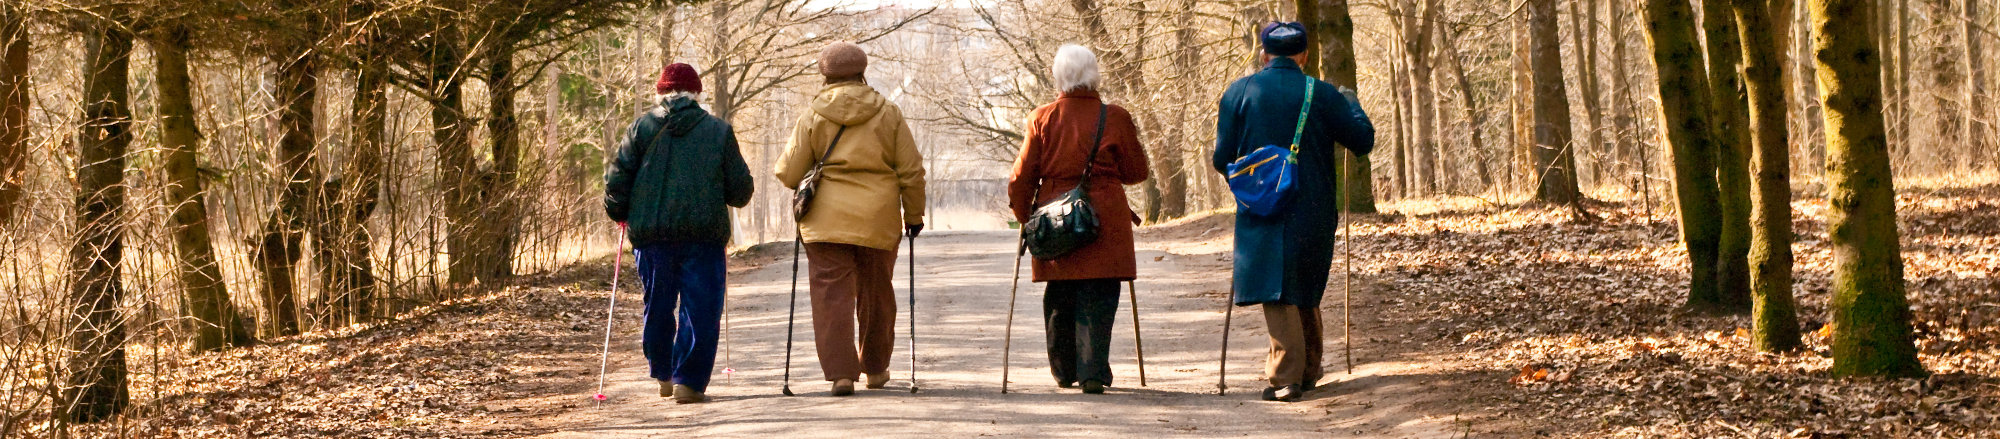 Zajęcia z nordic walking dla seniorów